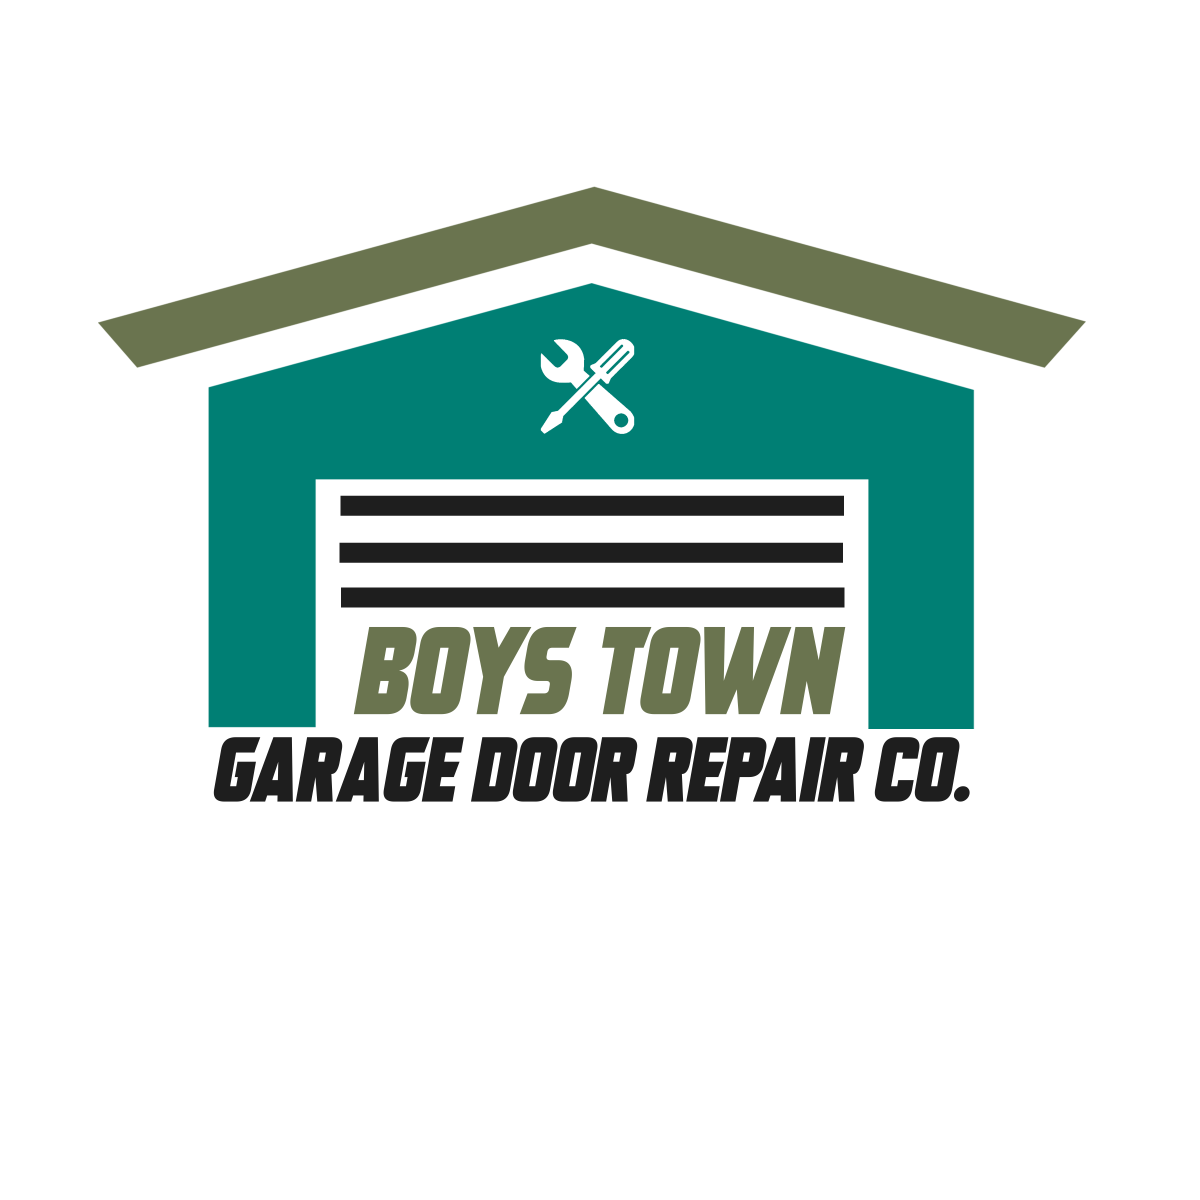 Boys Town Garage Door Repair Co.